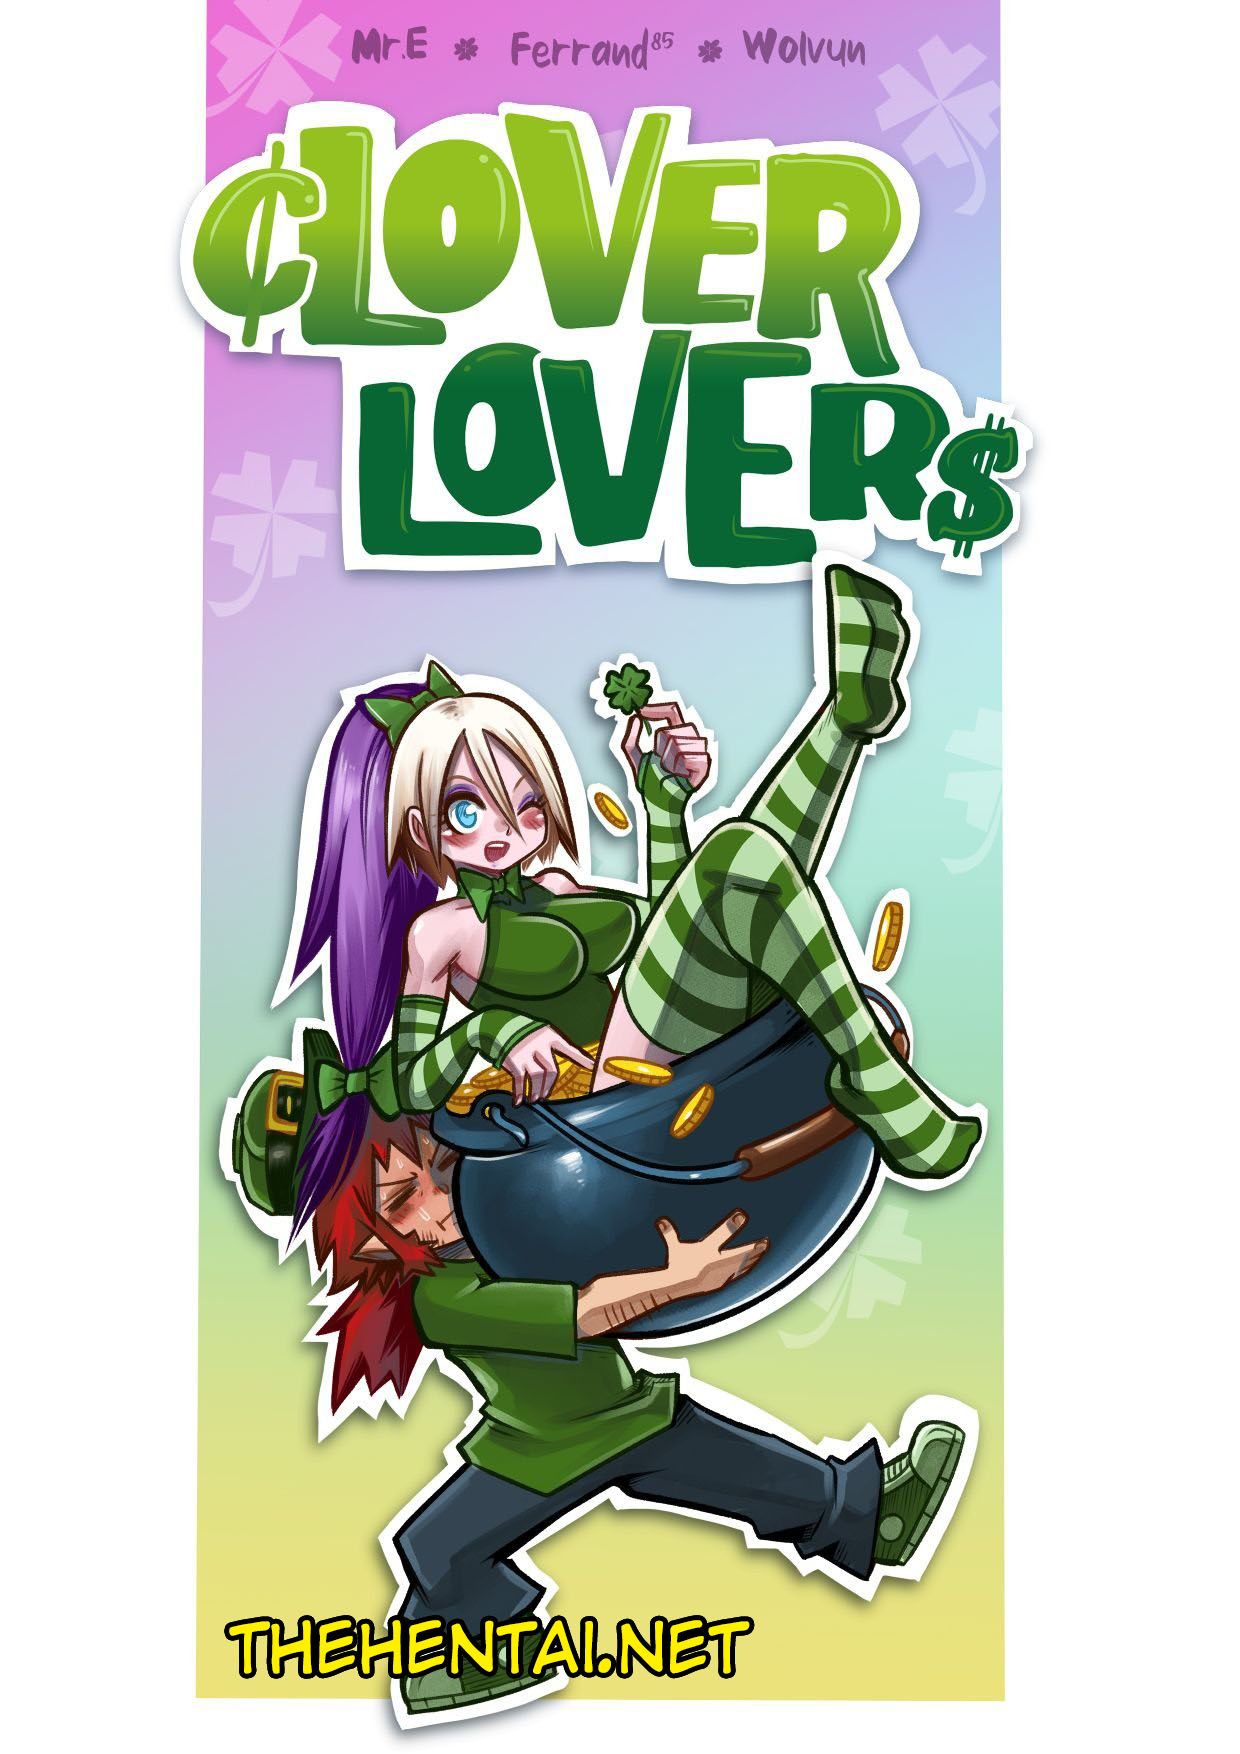 CLover Loverss Hentai pt-br 01